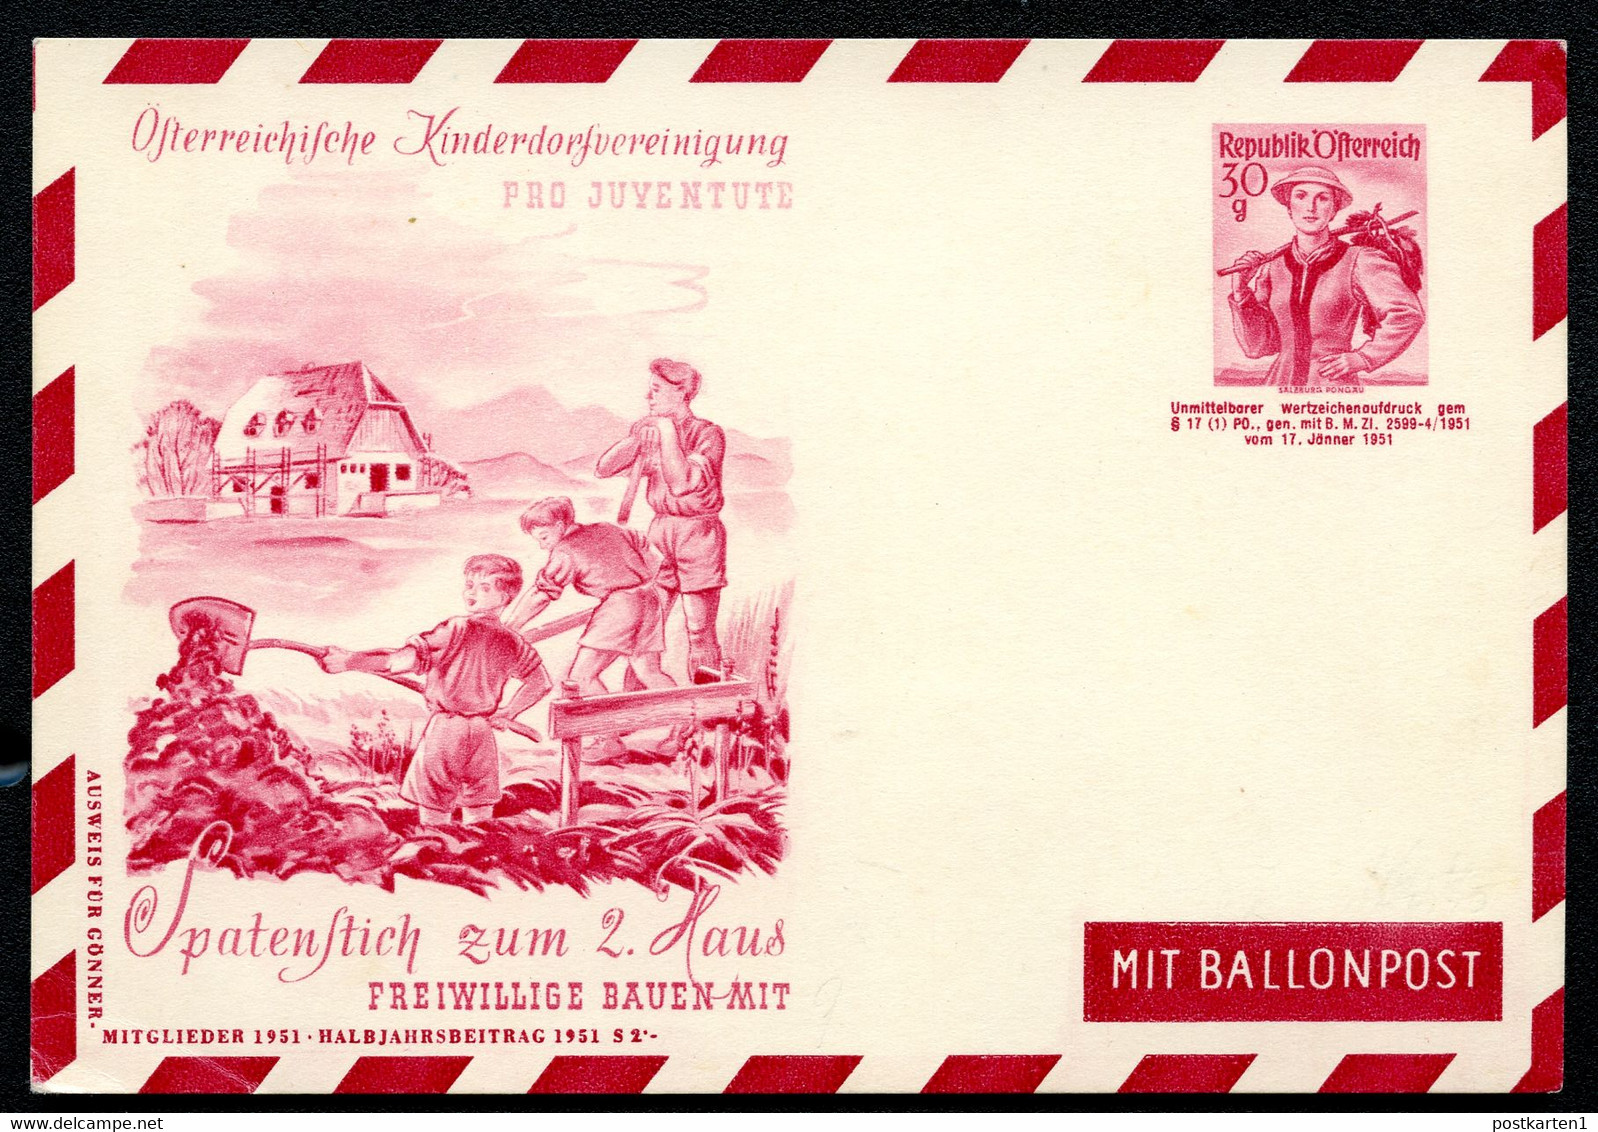 ÖSTERREICH PRIVAT-LUFTPOST-POSTKARTE PLP84 KINDERDORFVEREINIGUNG 1951 - Cartes Postales